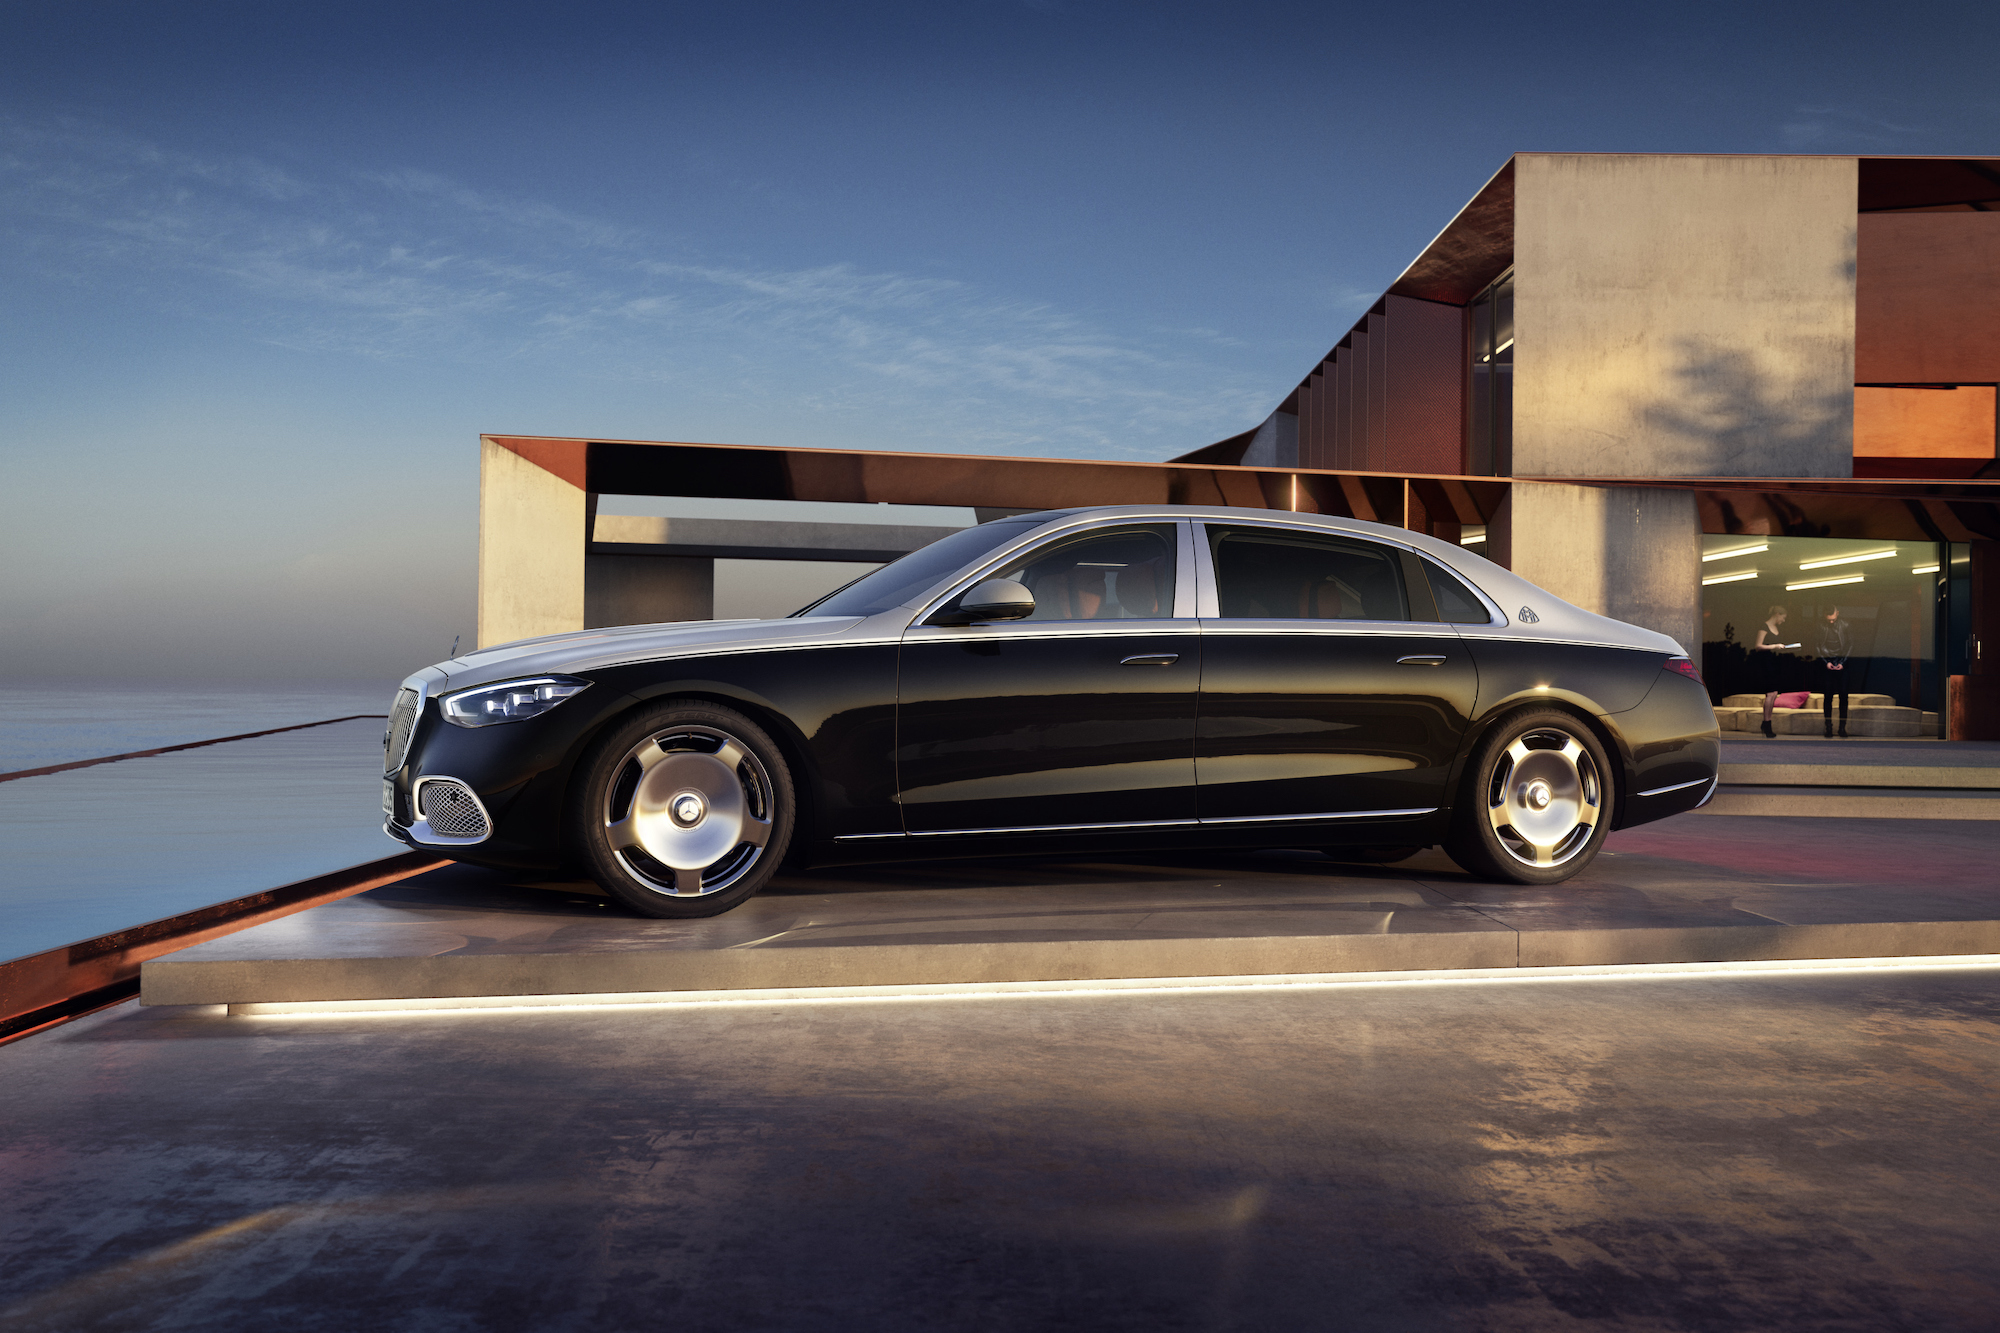 Mercedes-Maybach: Hãy thưởng thức hình ảnh siêu sang siêu đẳng của Mercedes-Maybach, với thiết kế nội thất sang trọng và động cơ vận hành mạnh mẽ. Tất cả những gì bạn muốn trong một chiếc xe hơi đẳng cấp đều nằm trong thiết kế này. 